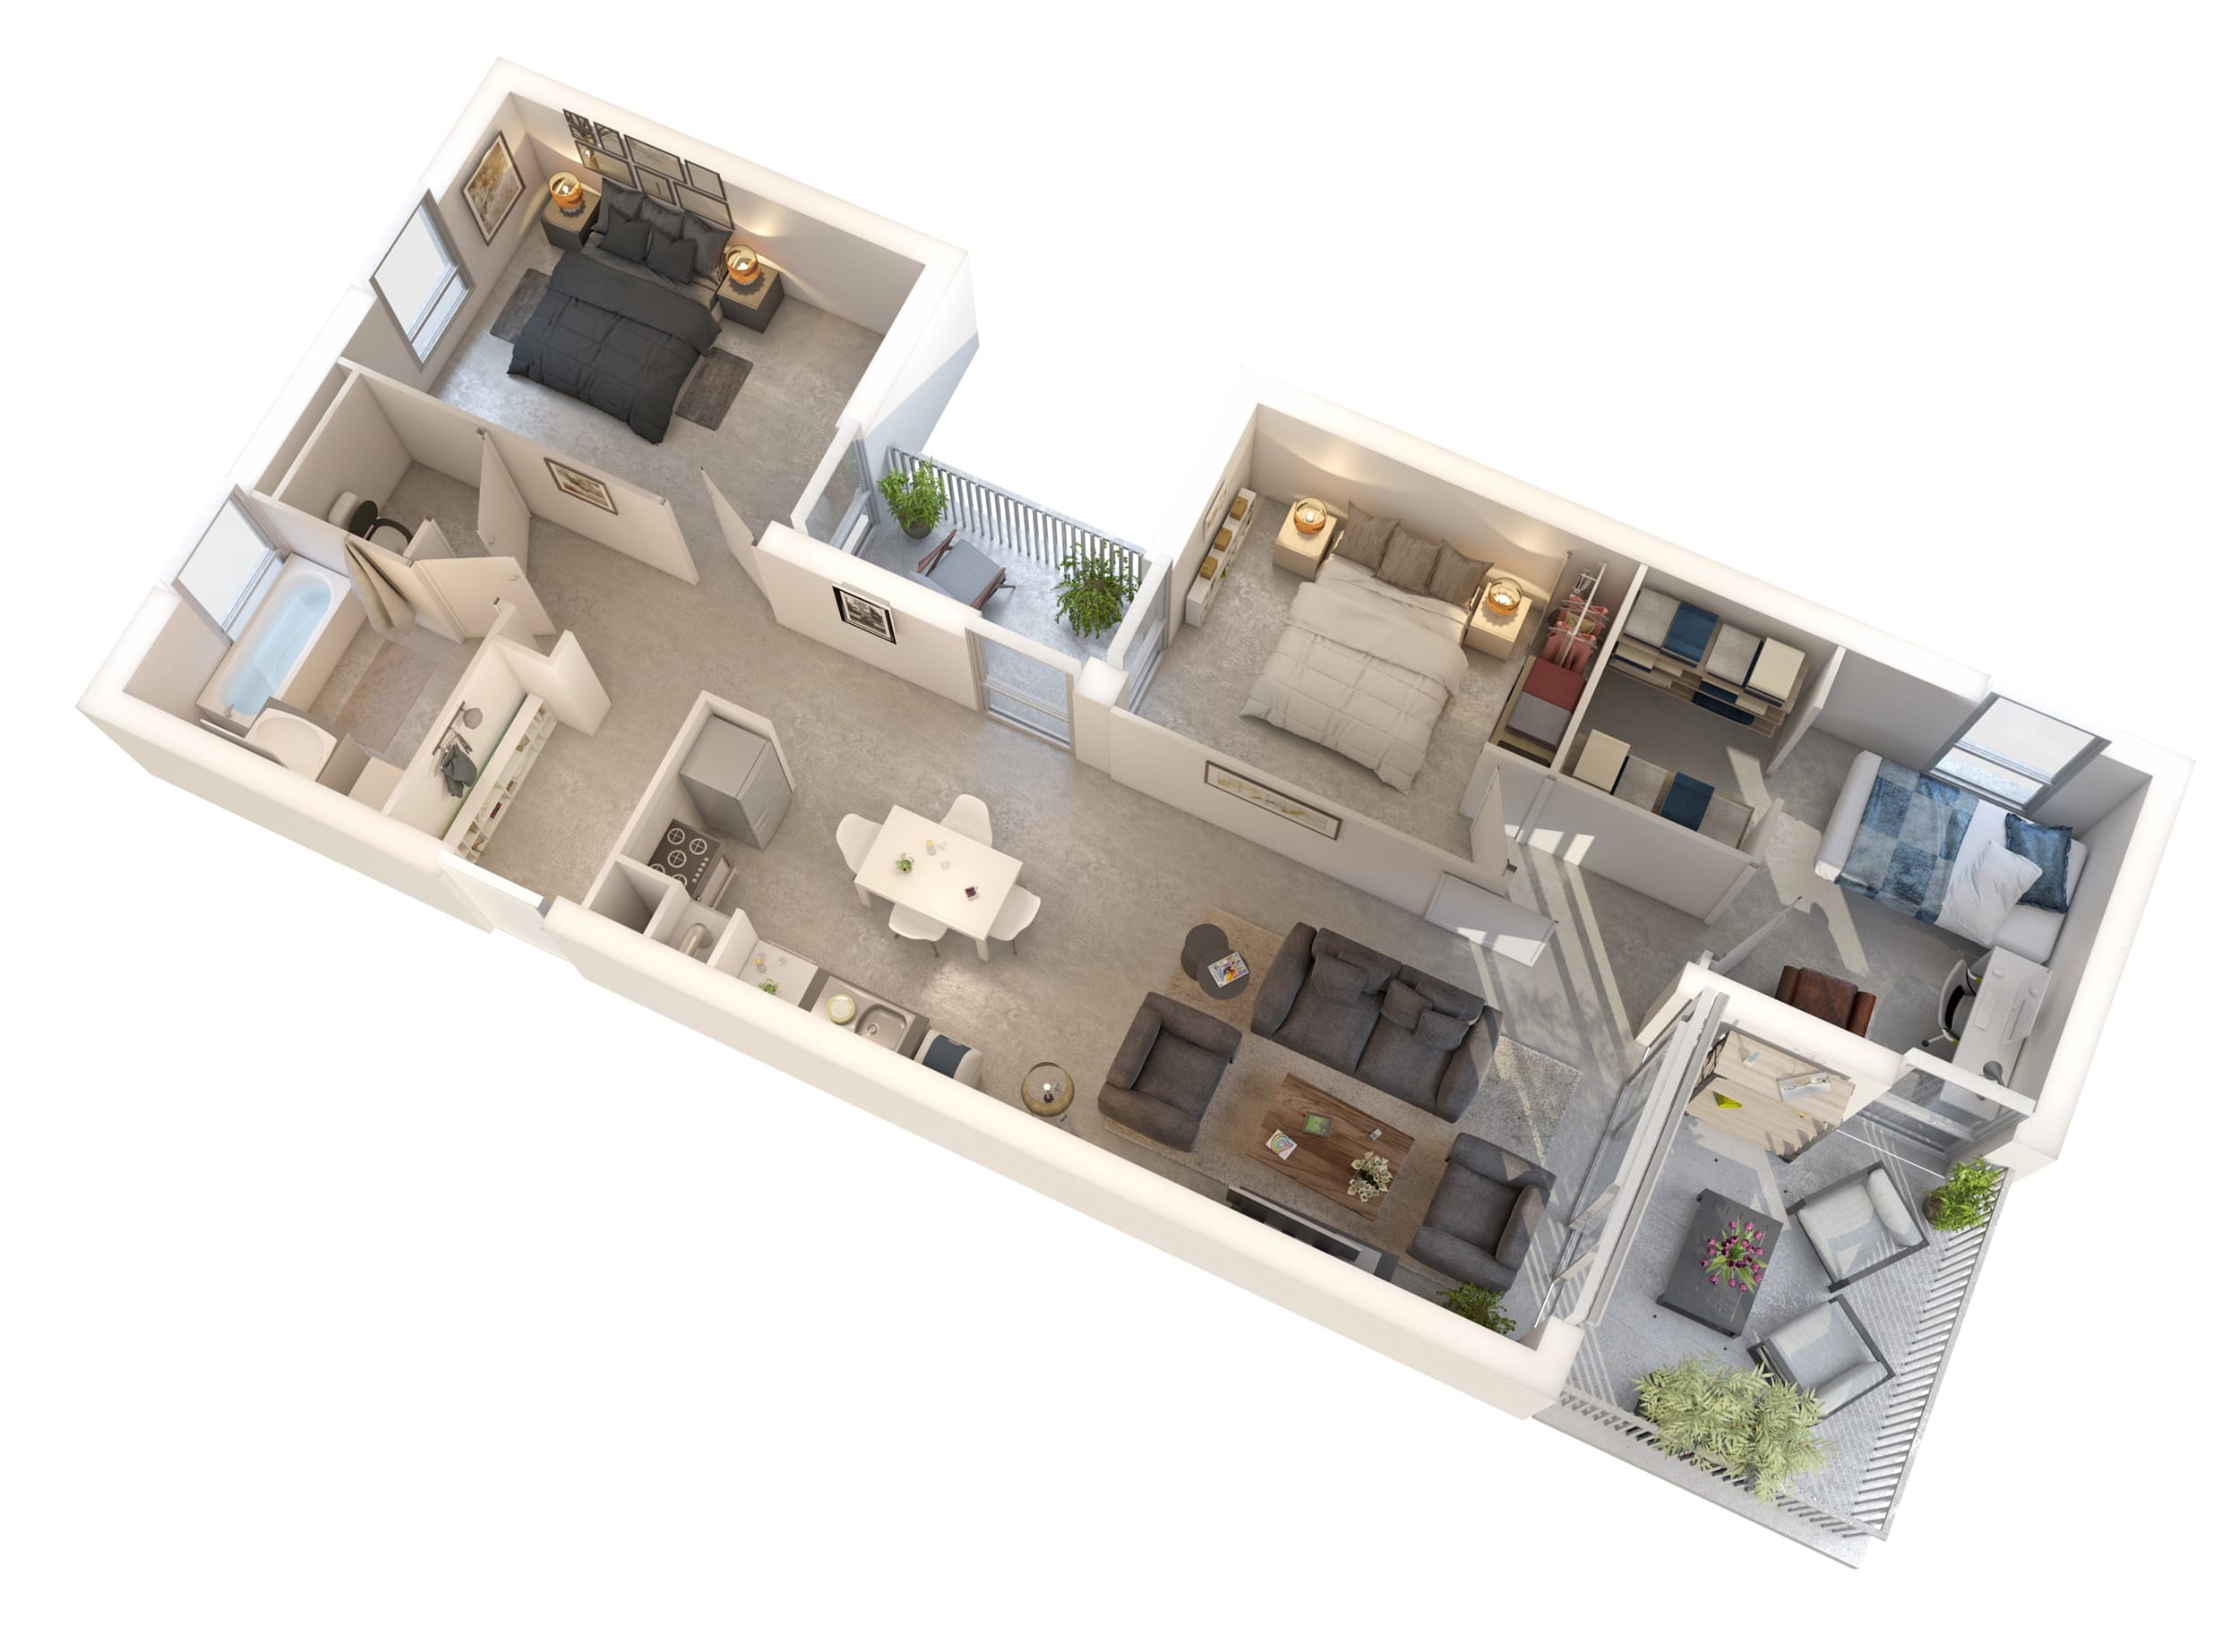 Modélisation d’intérieurs pour logements collectifs, aménagement intérieur type T4